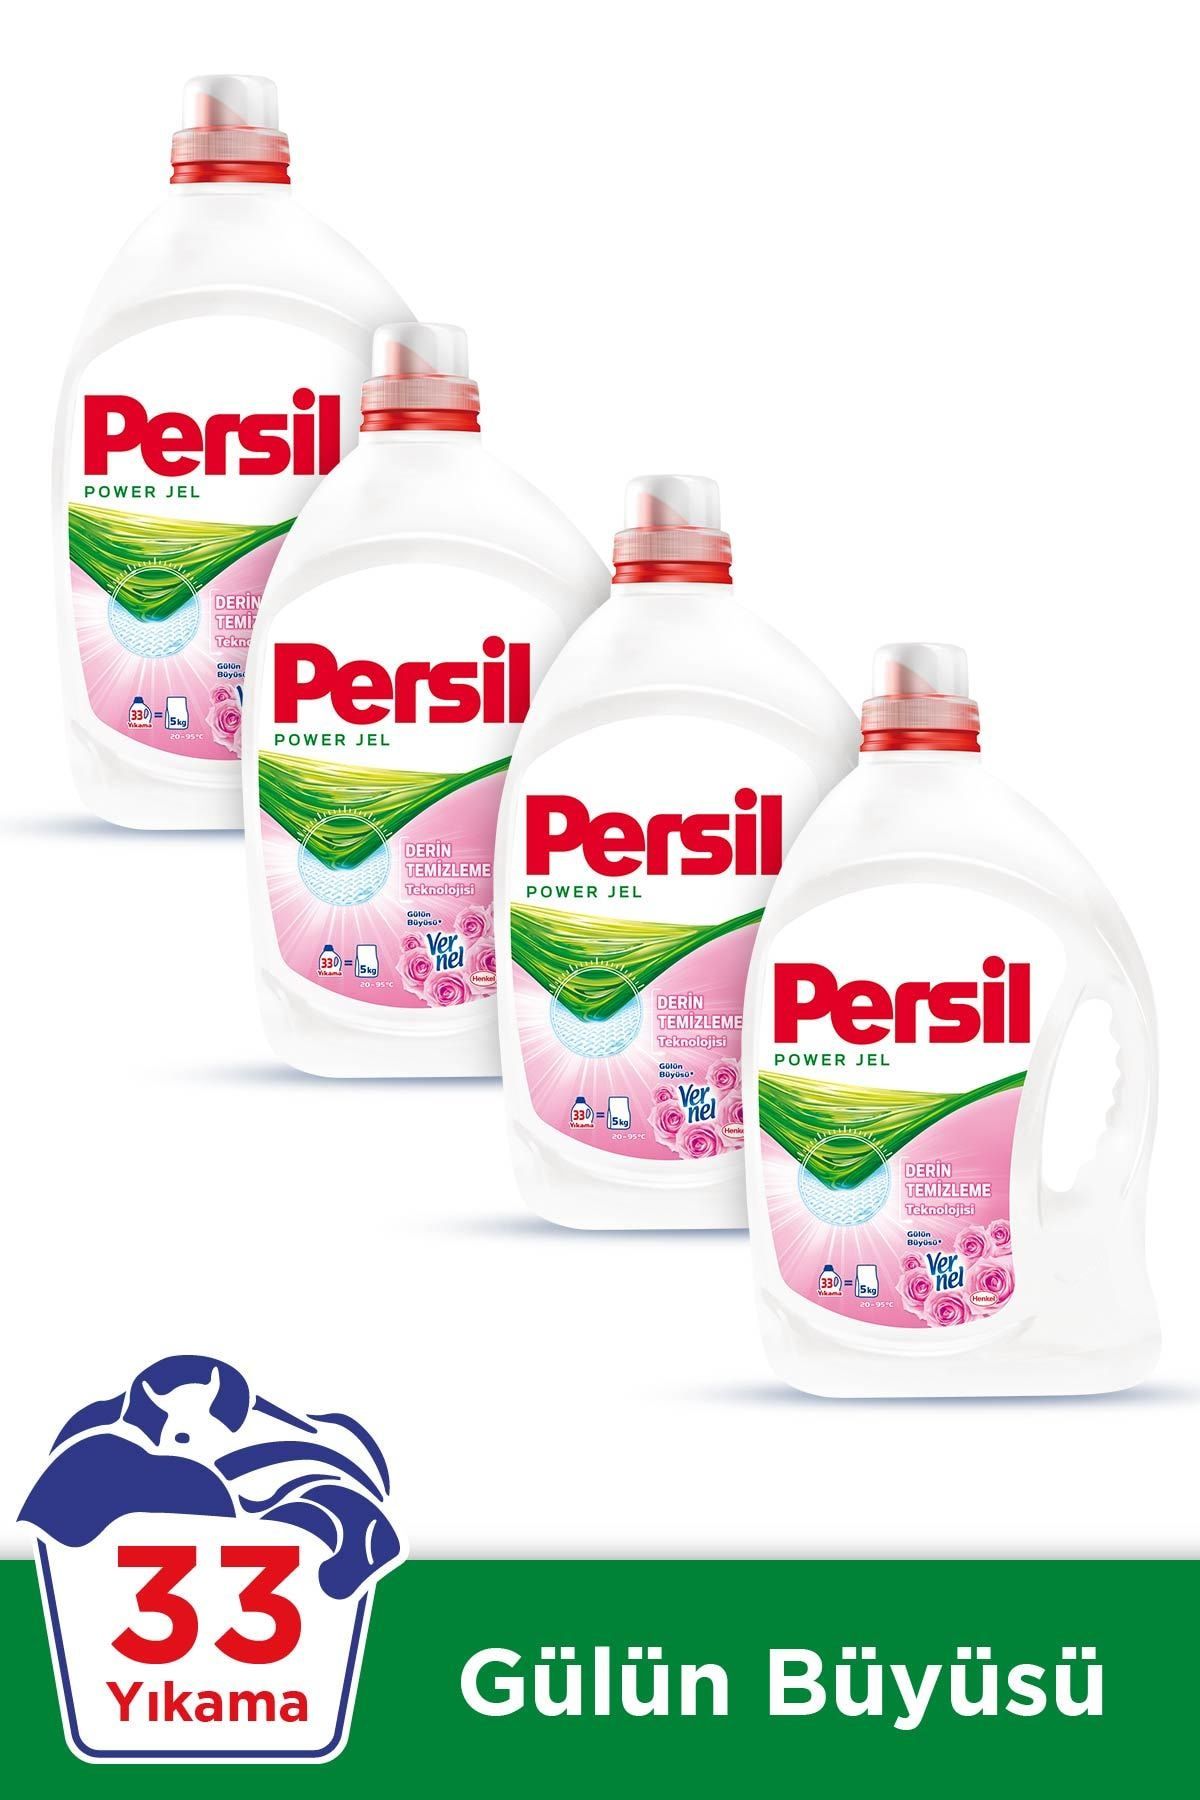 Persil Power Jel Sıvı Çamaşır Deterjanı Gülün Büyüsü 33 Yıkama 4'lü Set  30000168